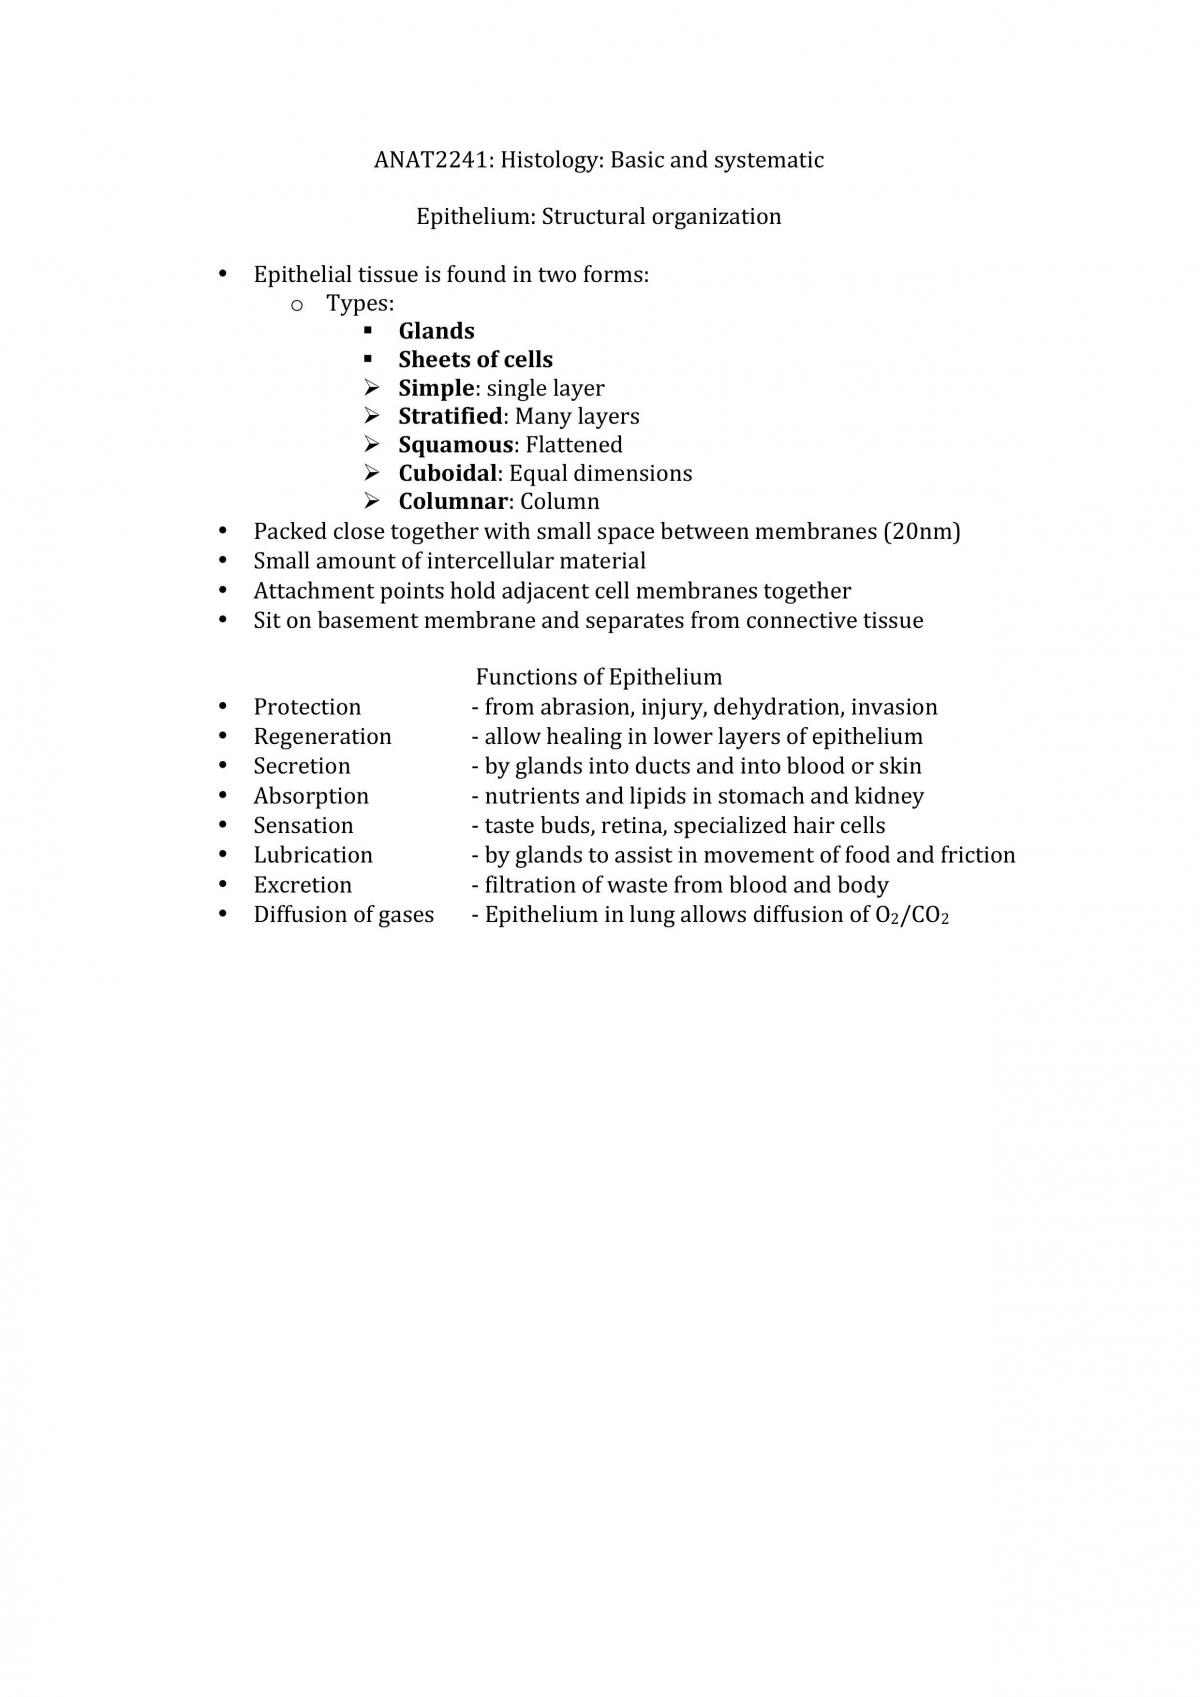 ANAT2241 - Histology - Page 1